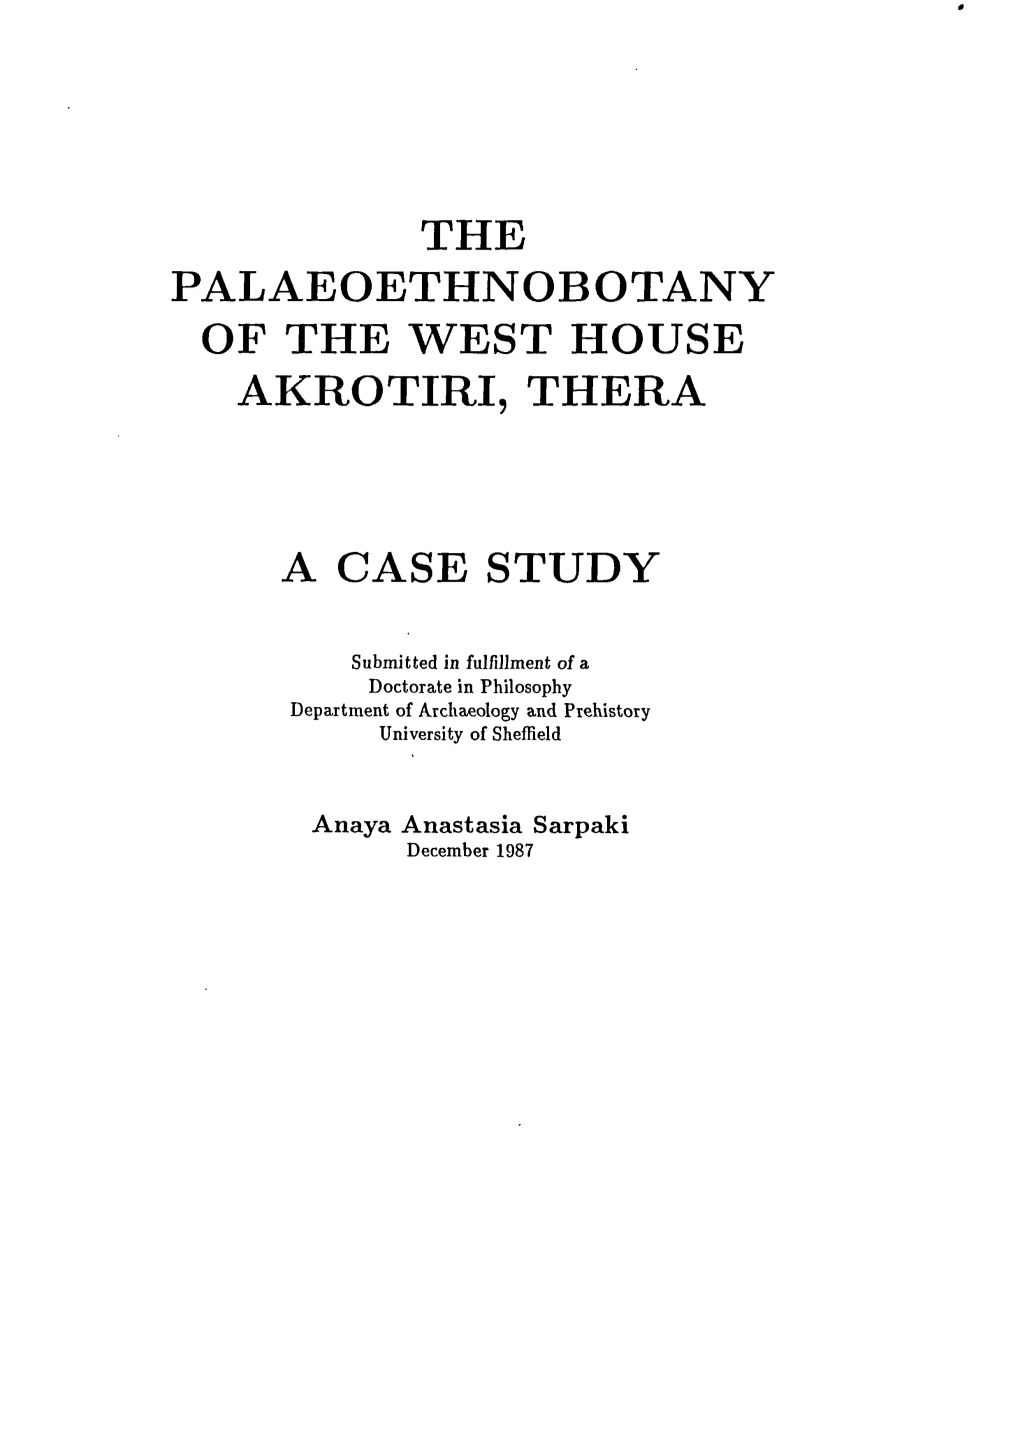 The Palaeoethnobotany of the West House Akrotiri, Thera